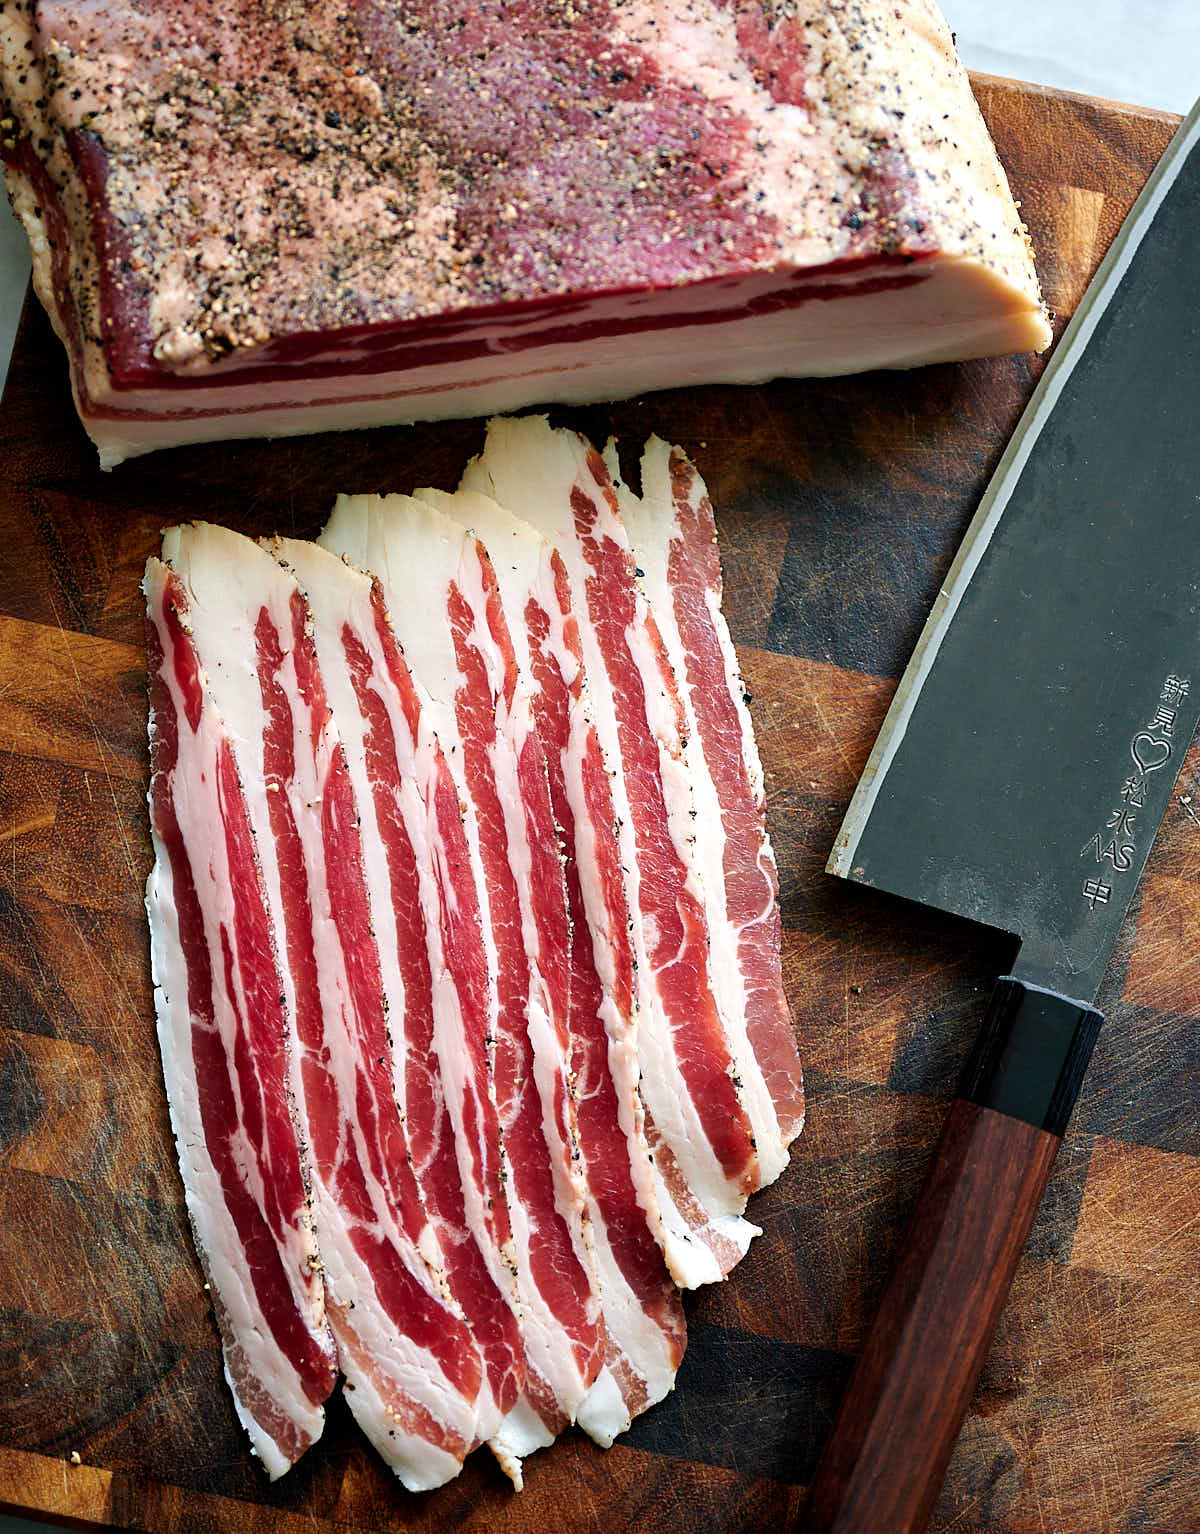 Heritage Pork Bacon - Darker meat, richer flavor